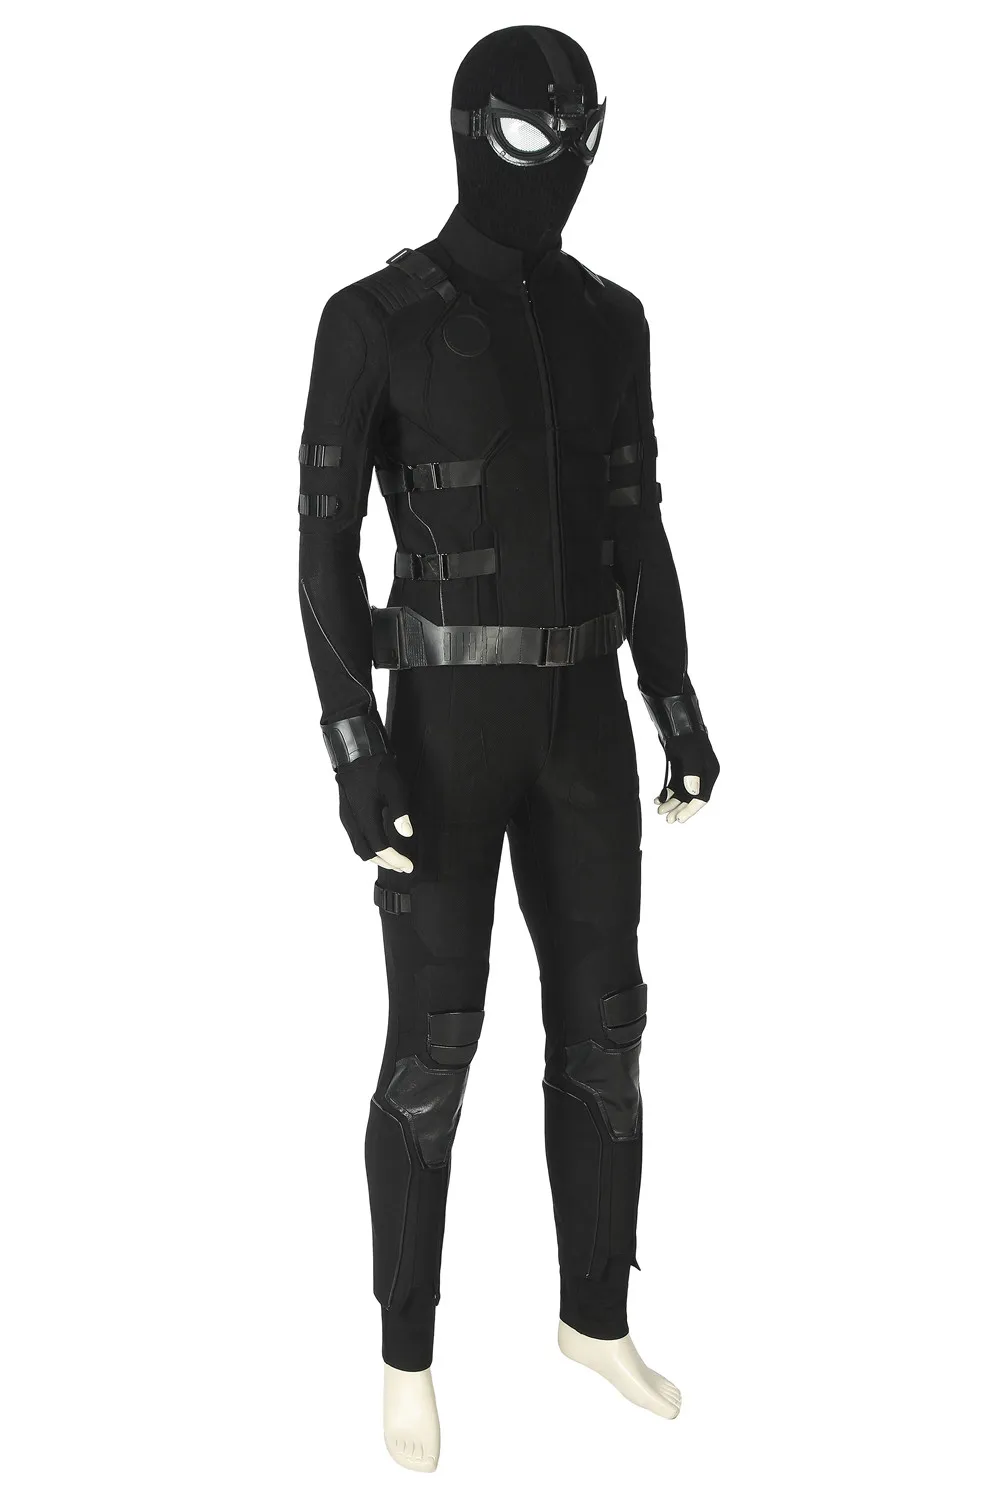 Новинка; костюм Человека-паука; костюм для косплея; черный костюм Человека-паука; куртка супергероя; костюм на Хэллоуин; ботинки по индивидуальному заказу